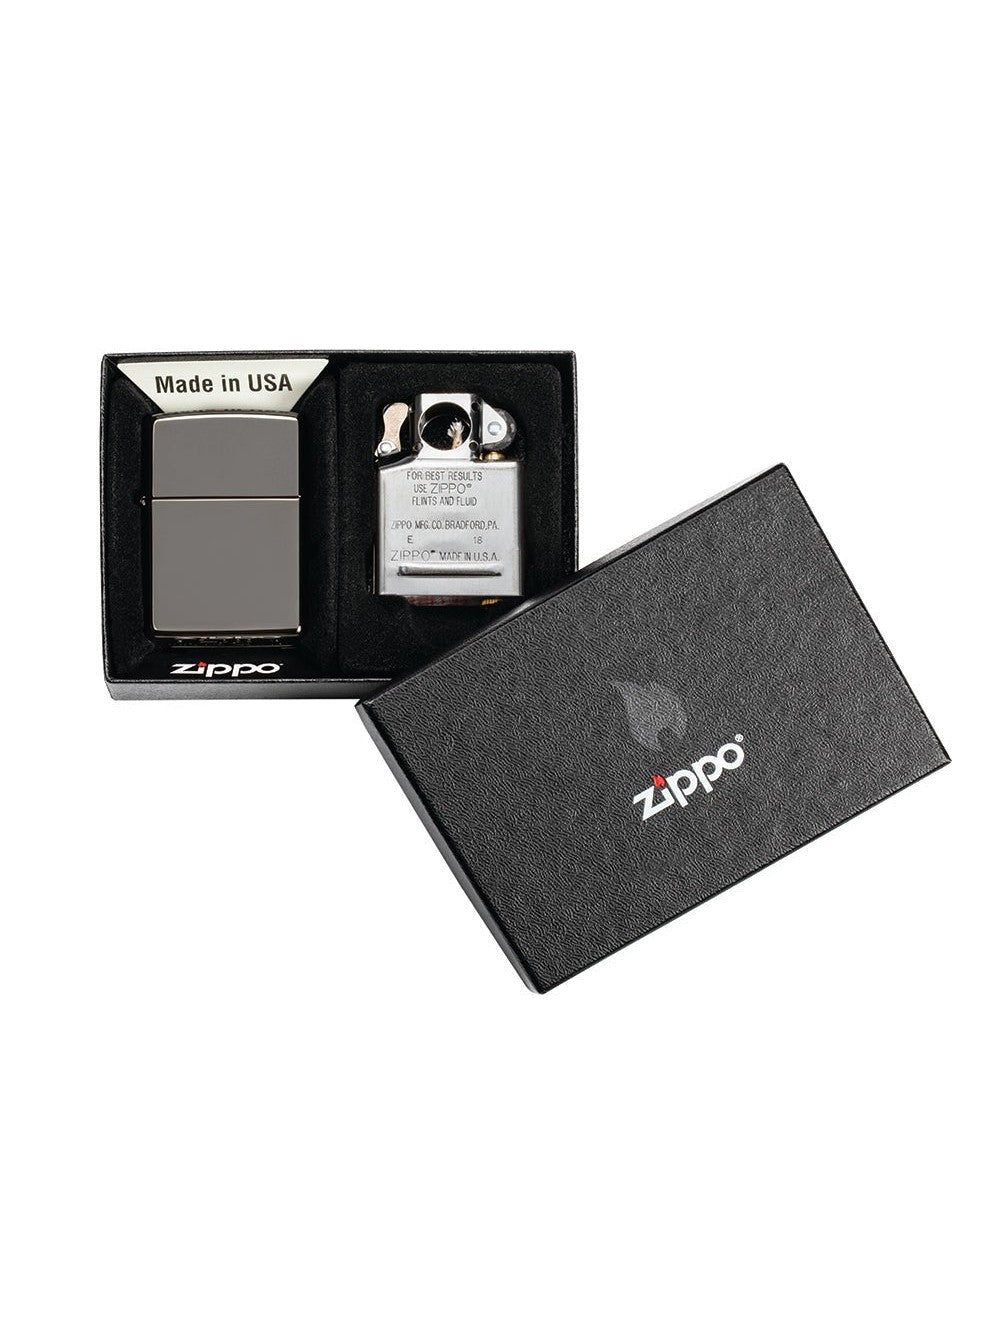 Zippo Lighter: Lighter and Pipe Insert Gift Set - Black Ice 29789